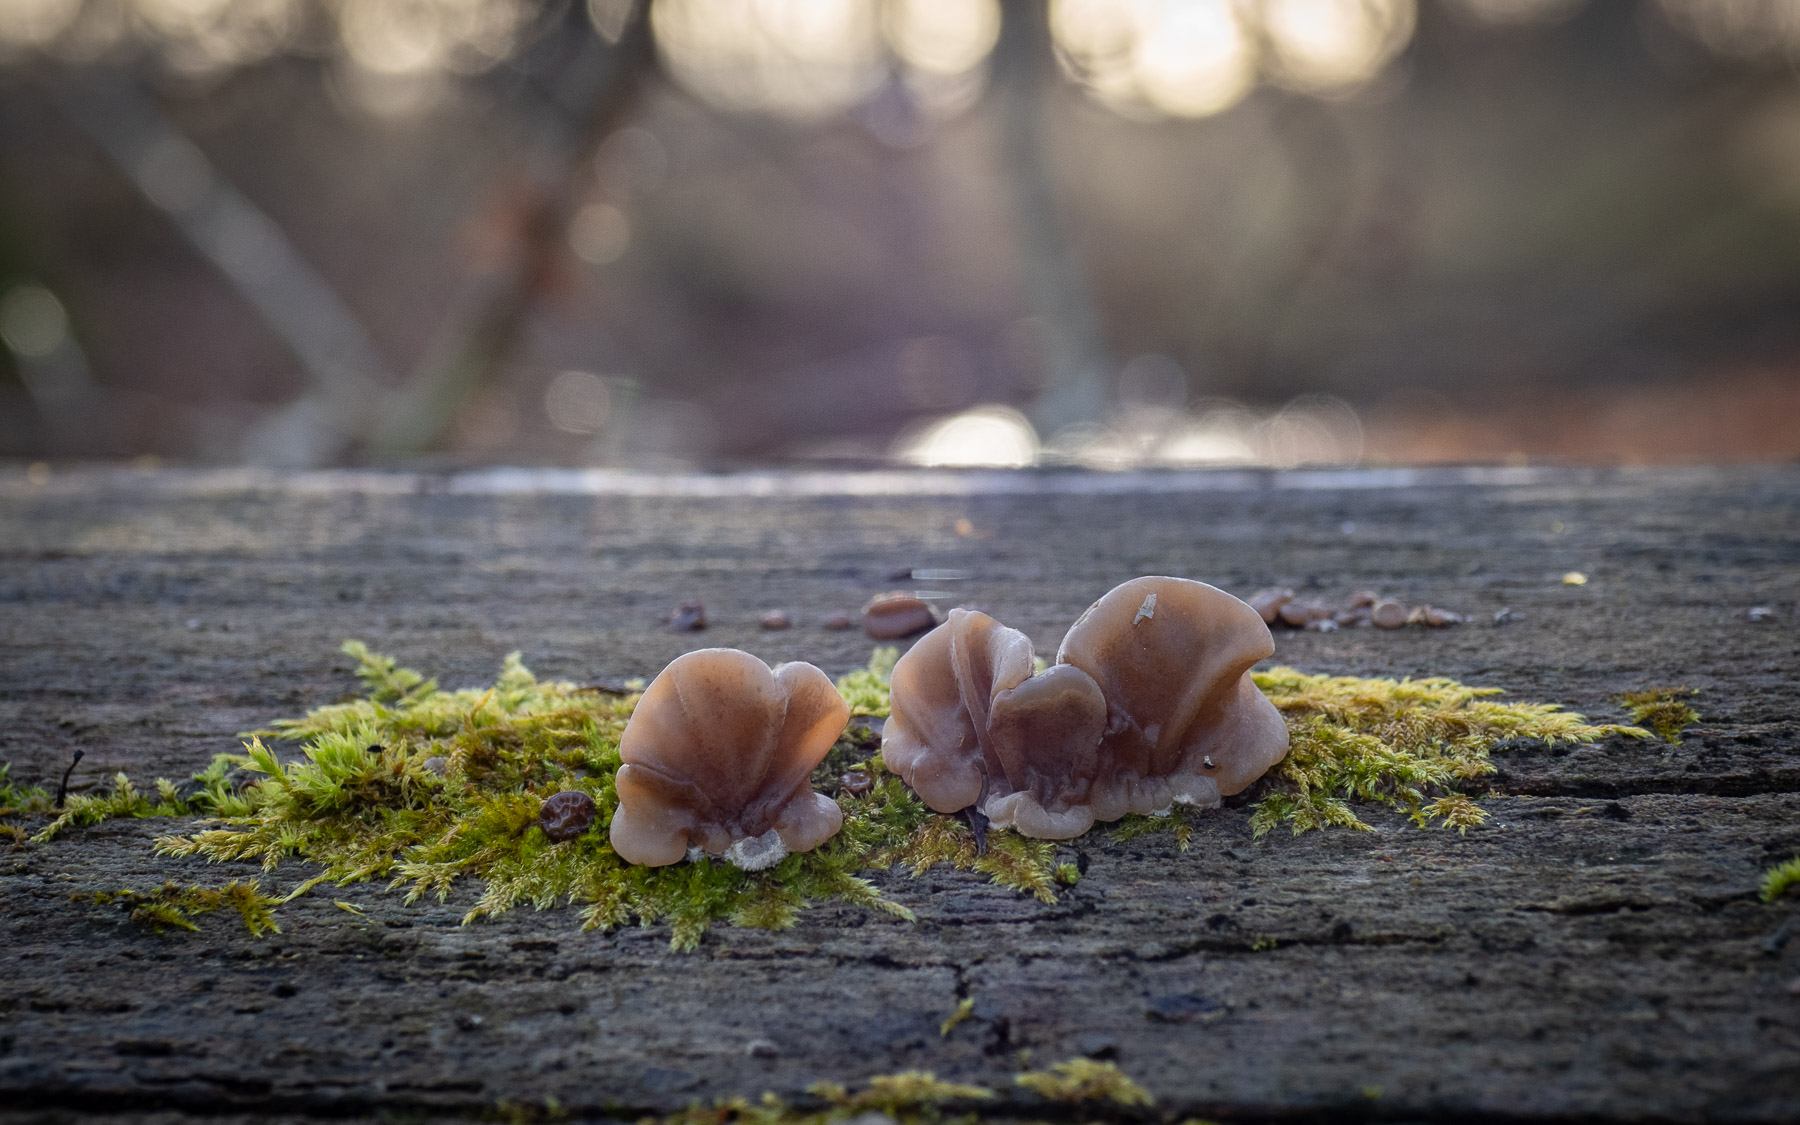 В буковом лесу на мёртвой древесине. Стокгольм, декабрь 2020. Автор фото: Сутормина Марина